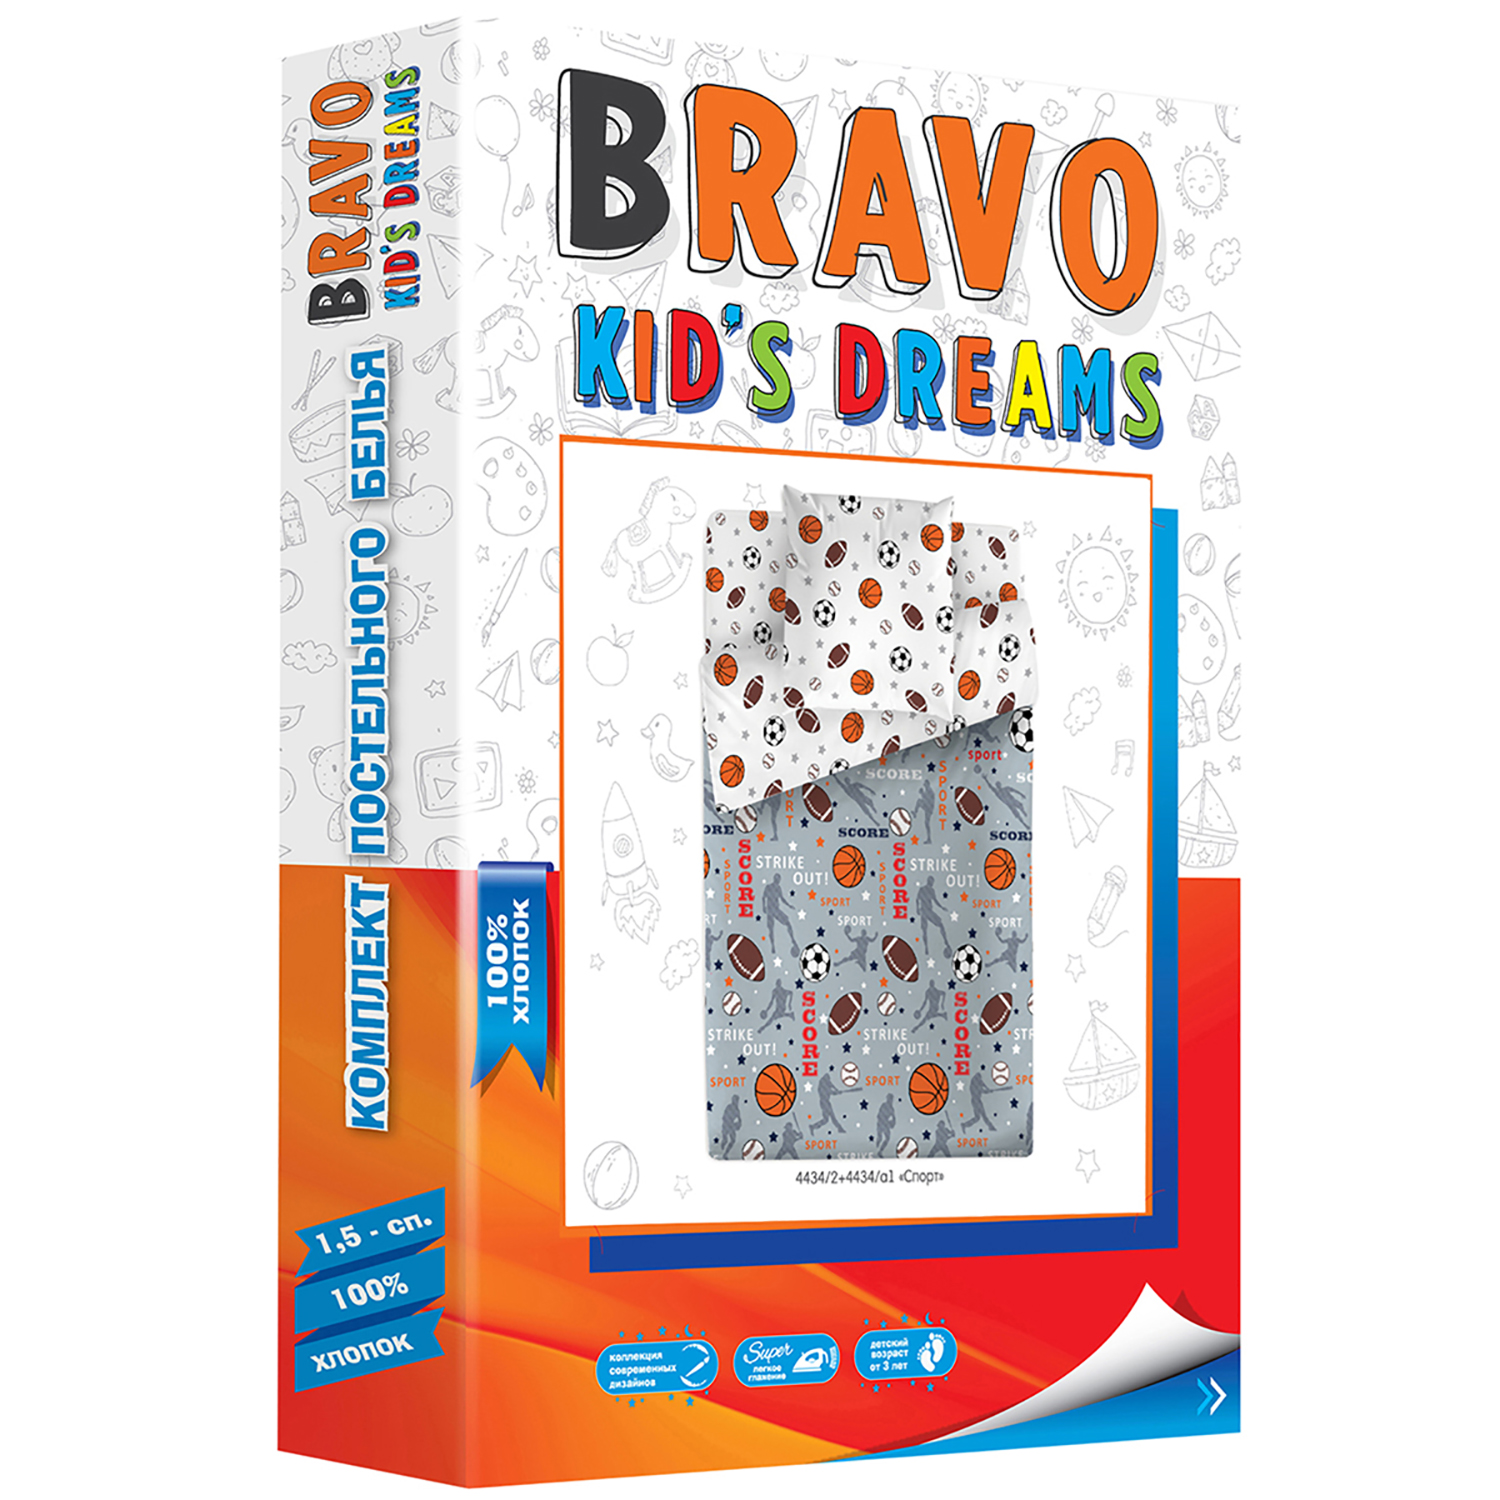 Комплект постельного белья BRAVO kids dreams Спорт 1.5спальный 3 предмета - фото 3